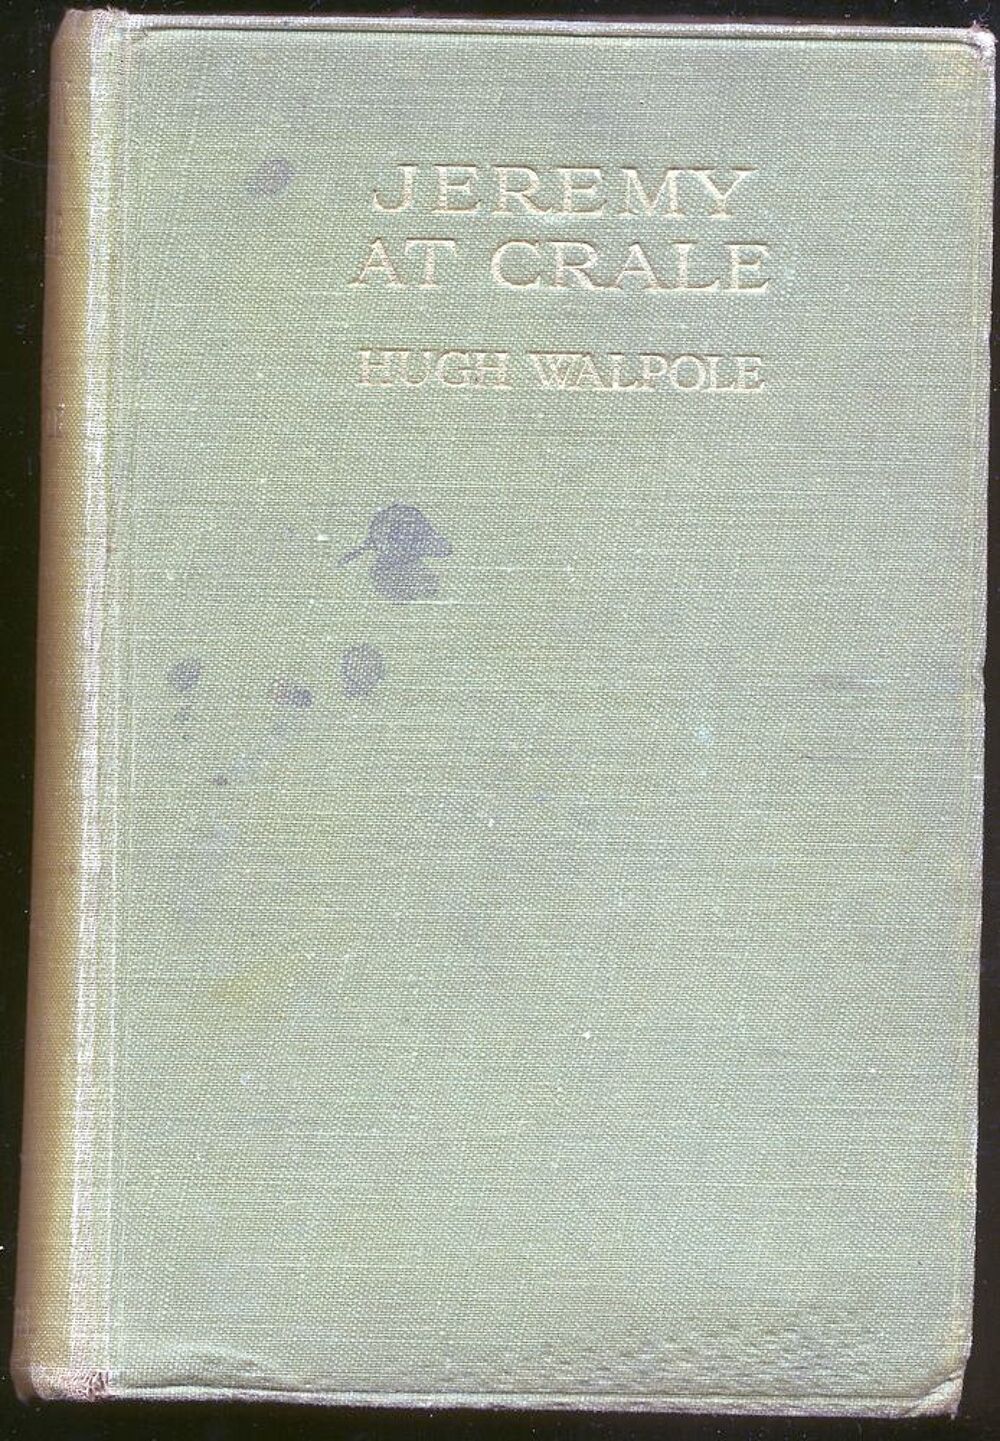 JEREMY AT CRALE
Hugh Walpole Livres et BD